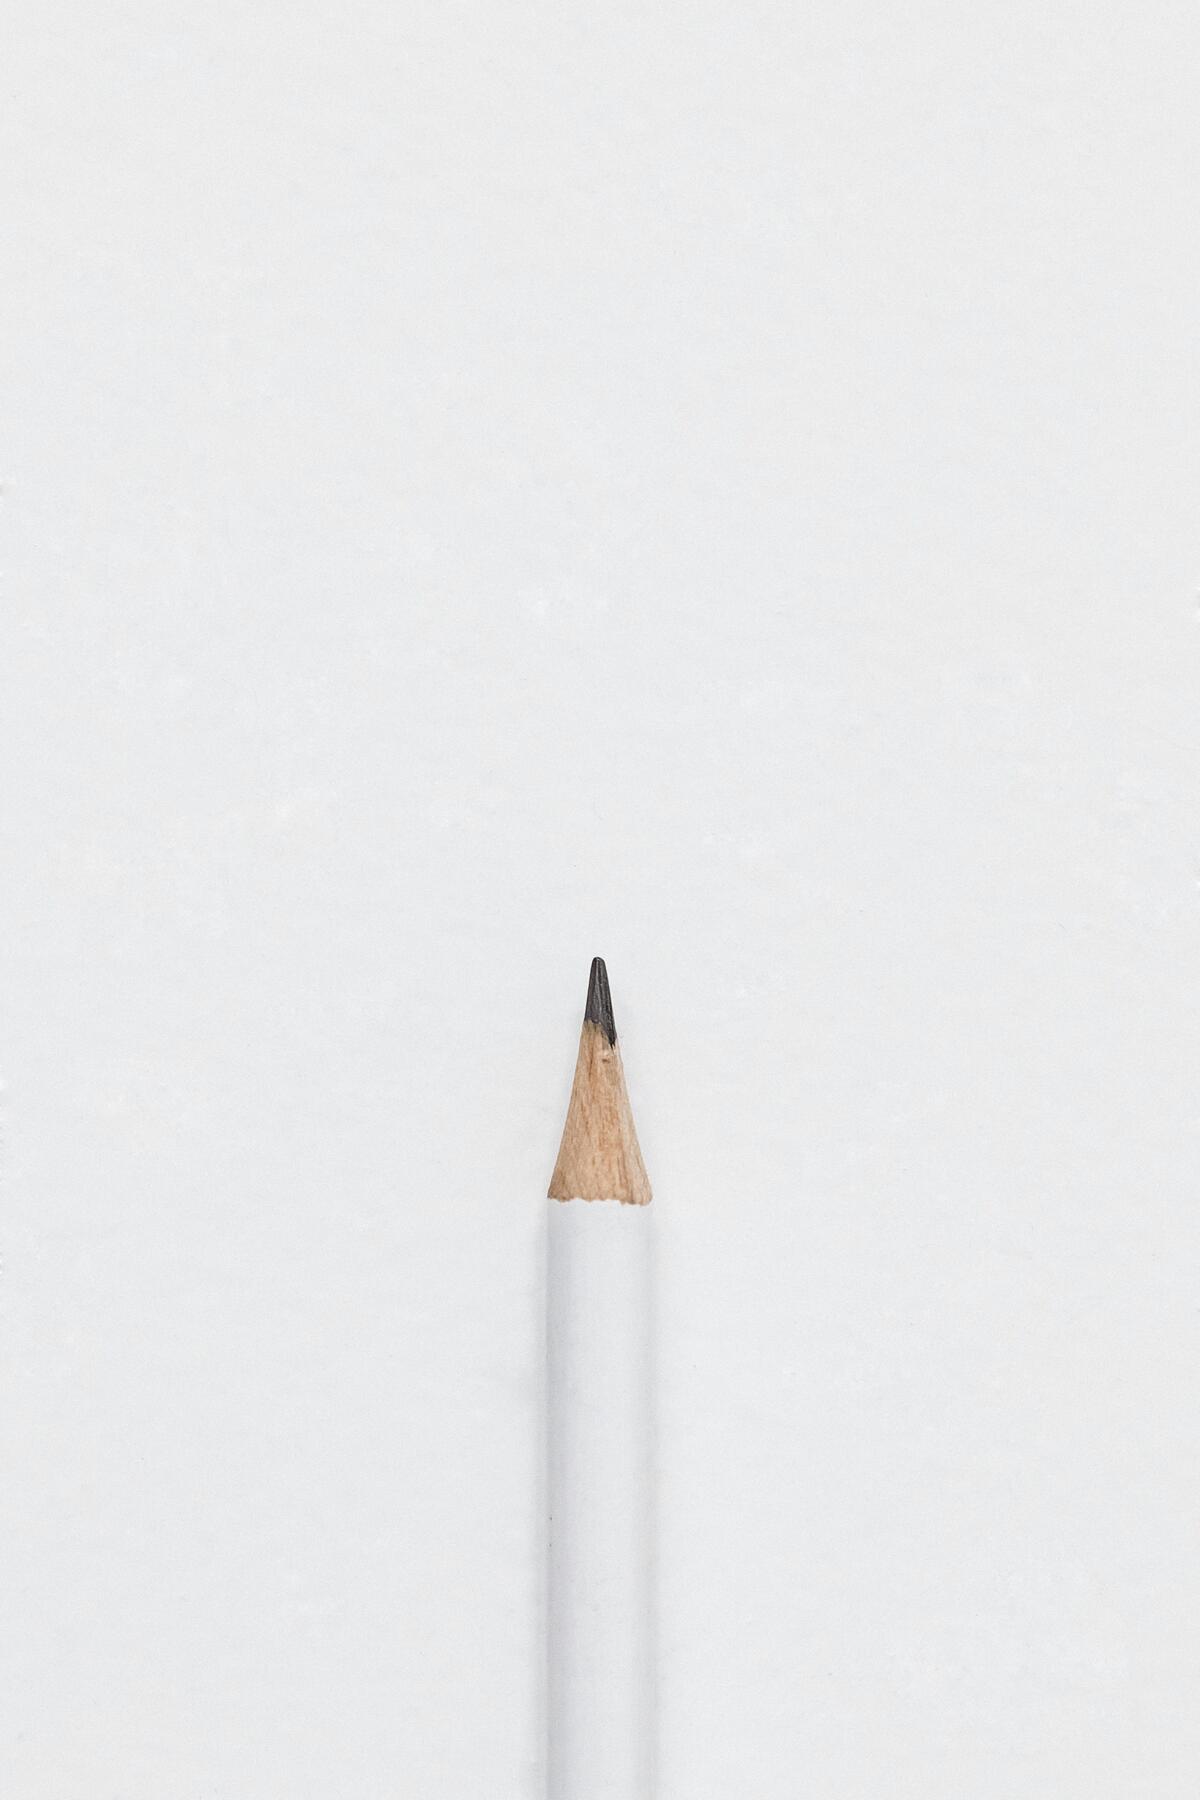 Простой карандаш